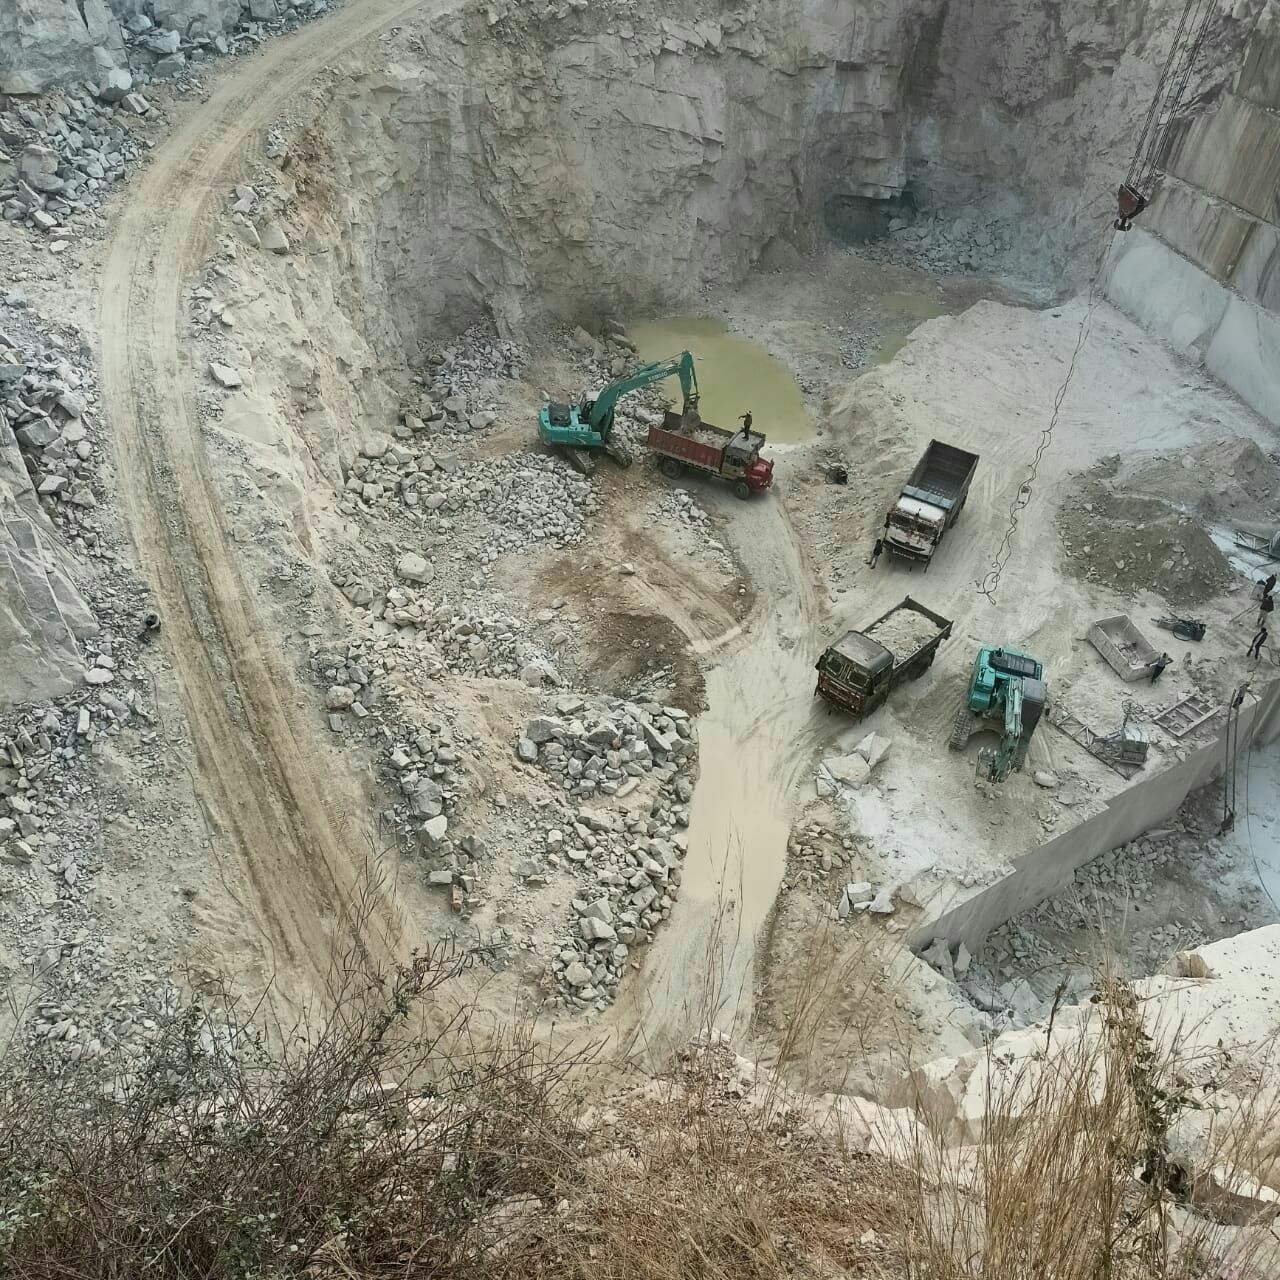 निगले पहाड़… खा गए बजरी, सोती रही सरकार | Illegal mining on the rise in Rajasthan | Patrika News